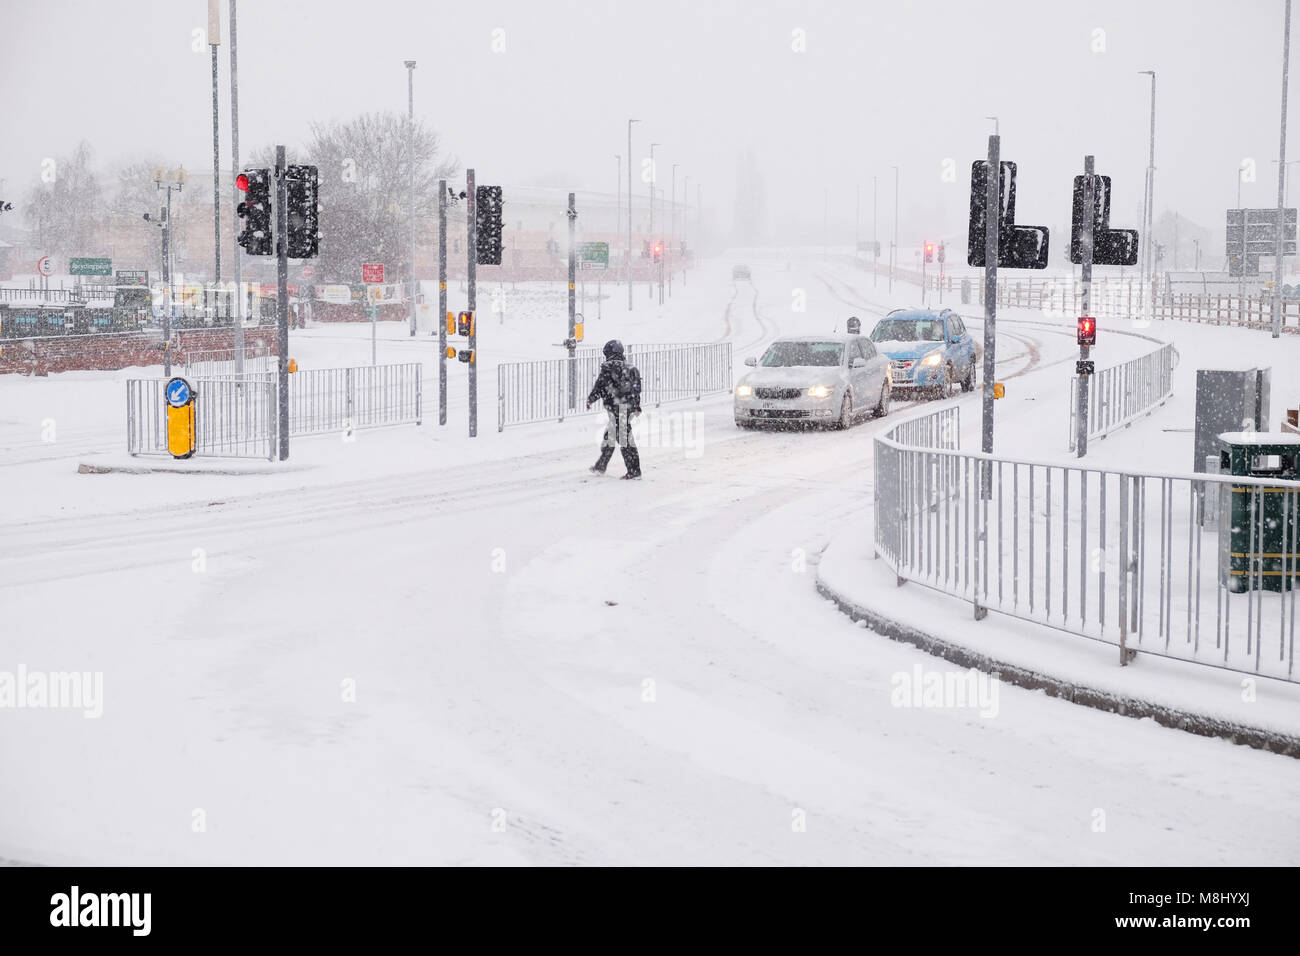 Hereford, Herefordshire, UK - Dimanche 18 Mars 2018 - de fortes chutes de neige de la ville d''Hereford continue pendant la nuit dimanche matin dans la ville de Hereford - un piéton traverse sur les routes couvertes de neige. Steven Mai /Alamy Live News Banque D'Images